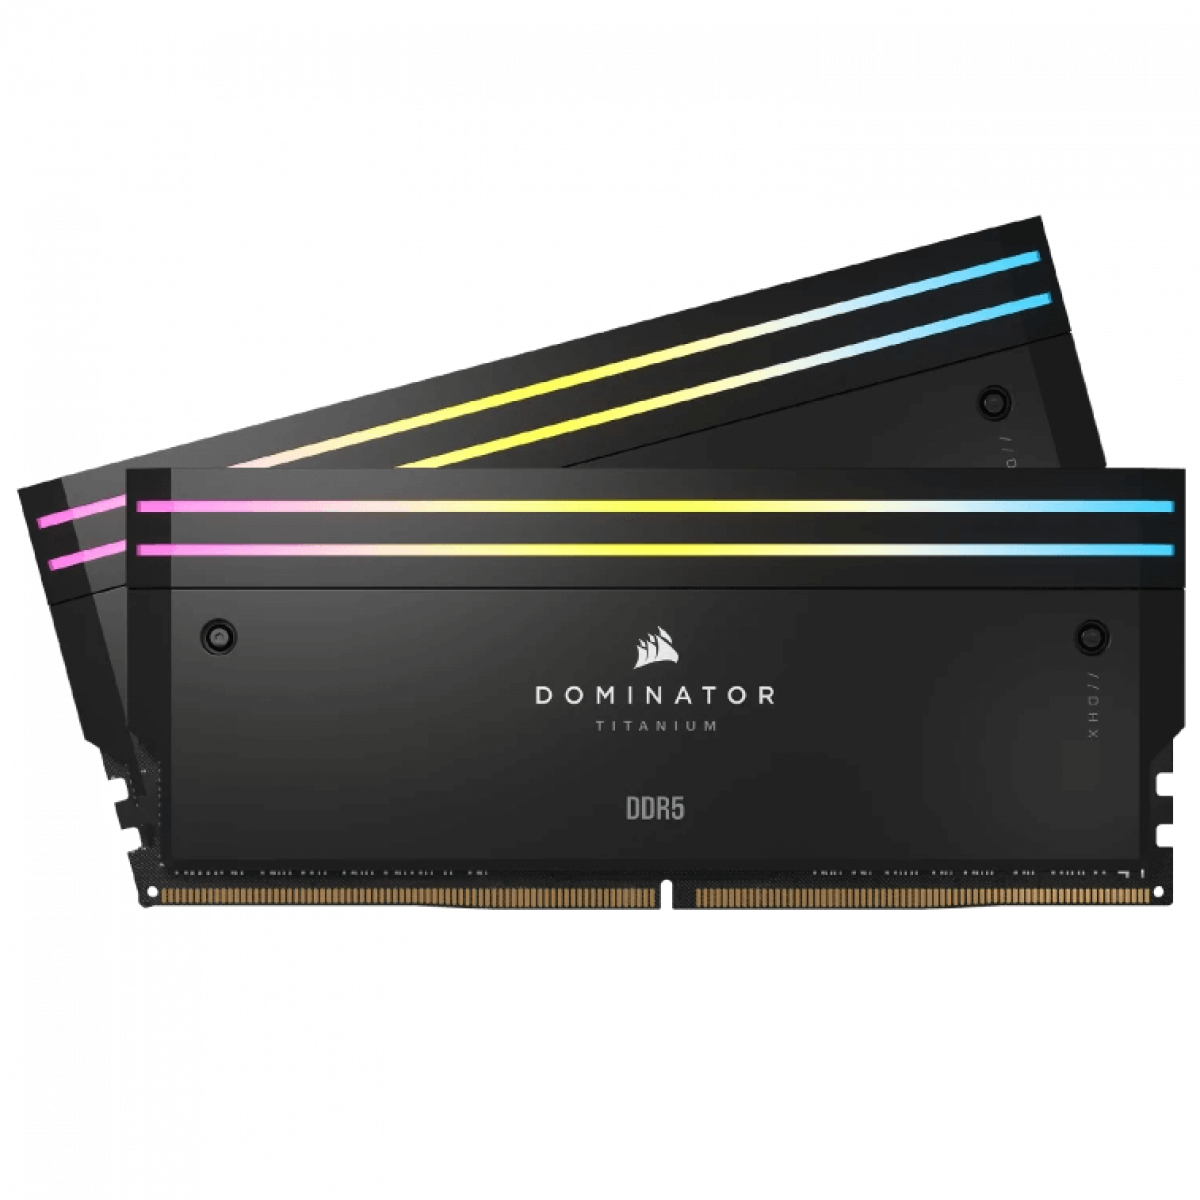 RAM DOMINATOR TITANIUM Black Heatspreader DDR5, 6400MT/s 96GB 2x48GB DIMM, XMP 3.0, RGB LED, 1.4V